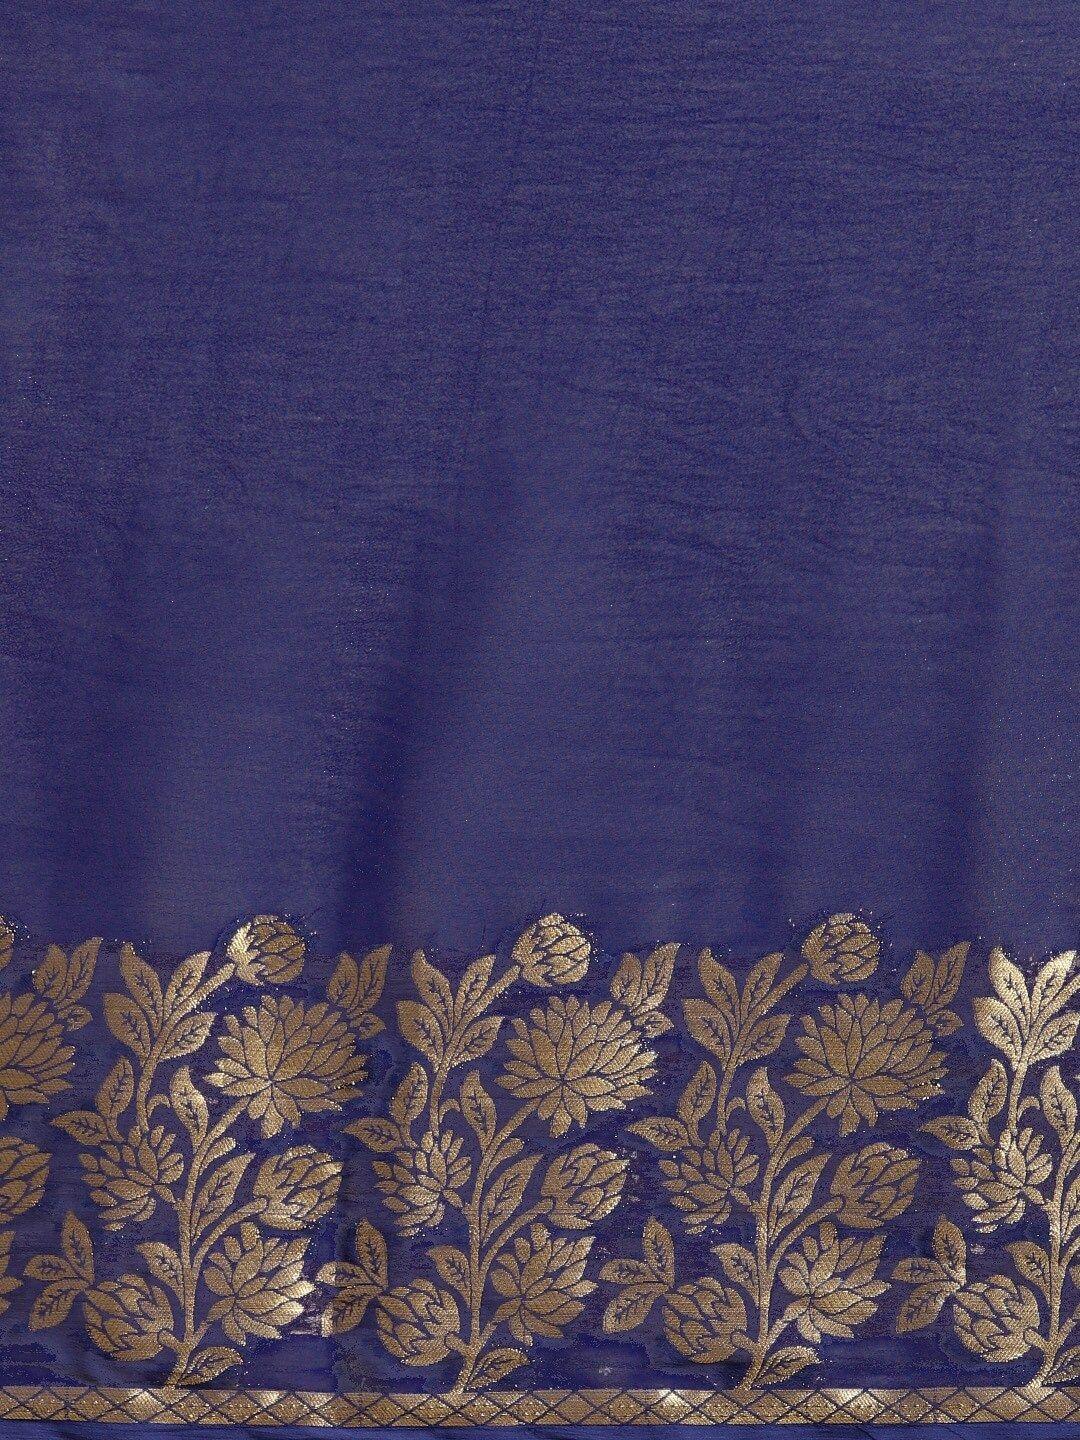 saree mall navy blue & gold-toned floral sarees